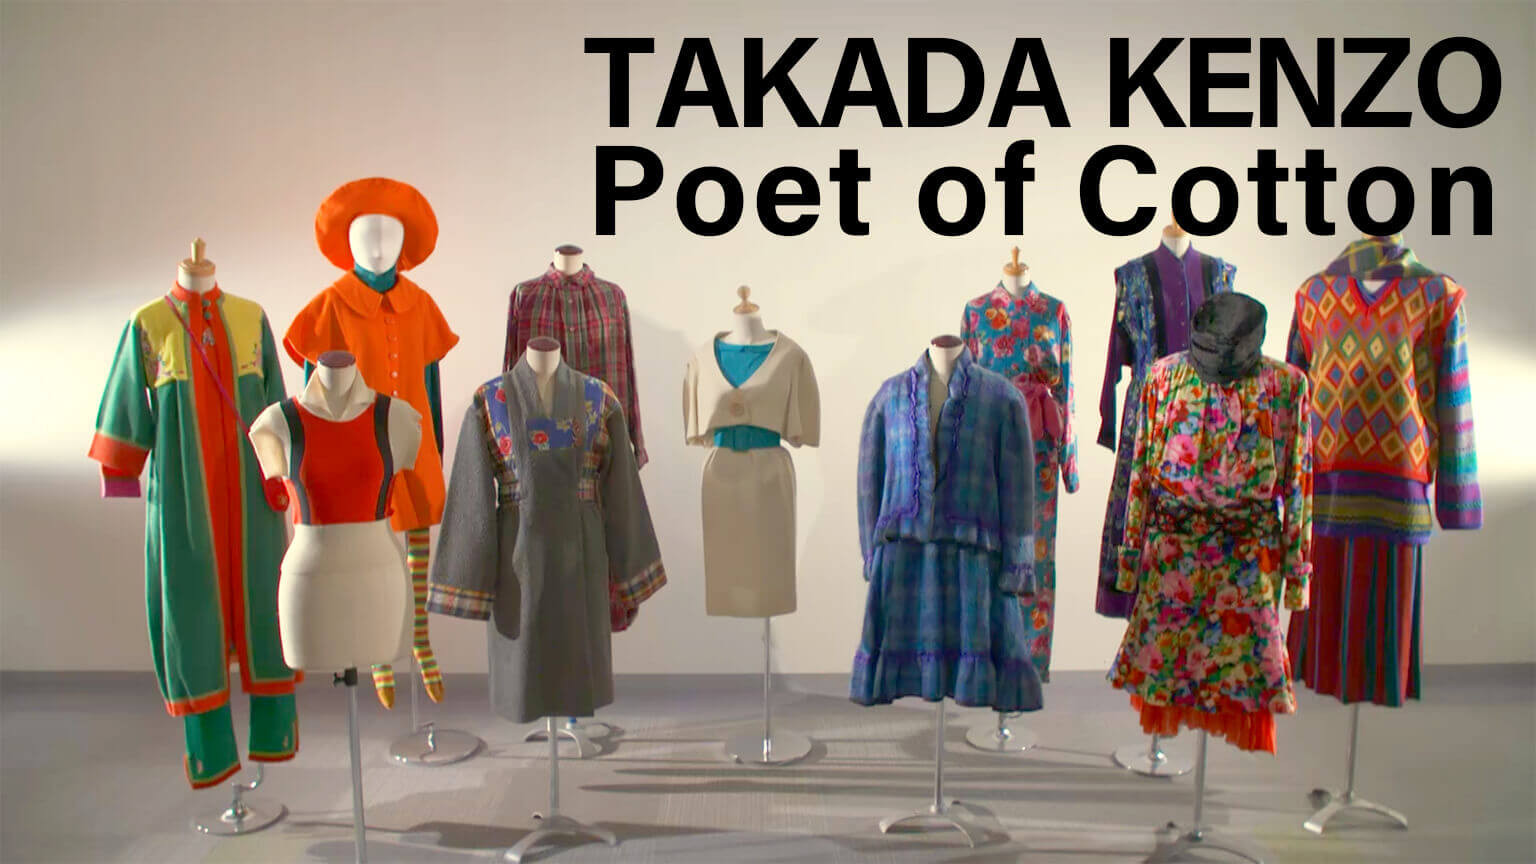 ทากาดะ เคนโซ กวีแห่งผ้าฝ้าย
TAKADA KENZO Poet of Cotton